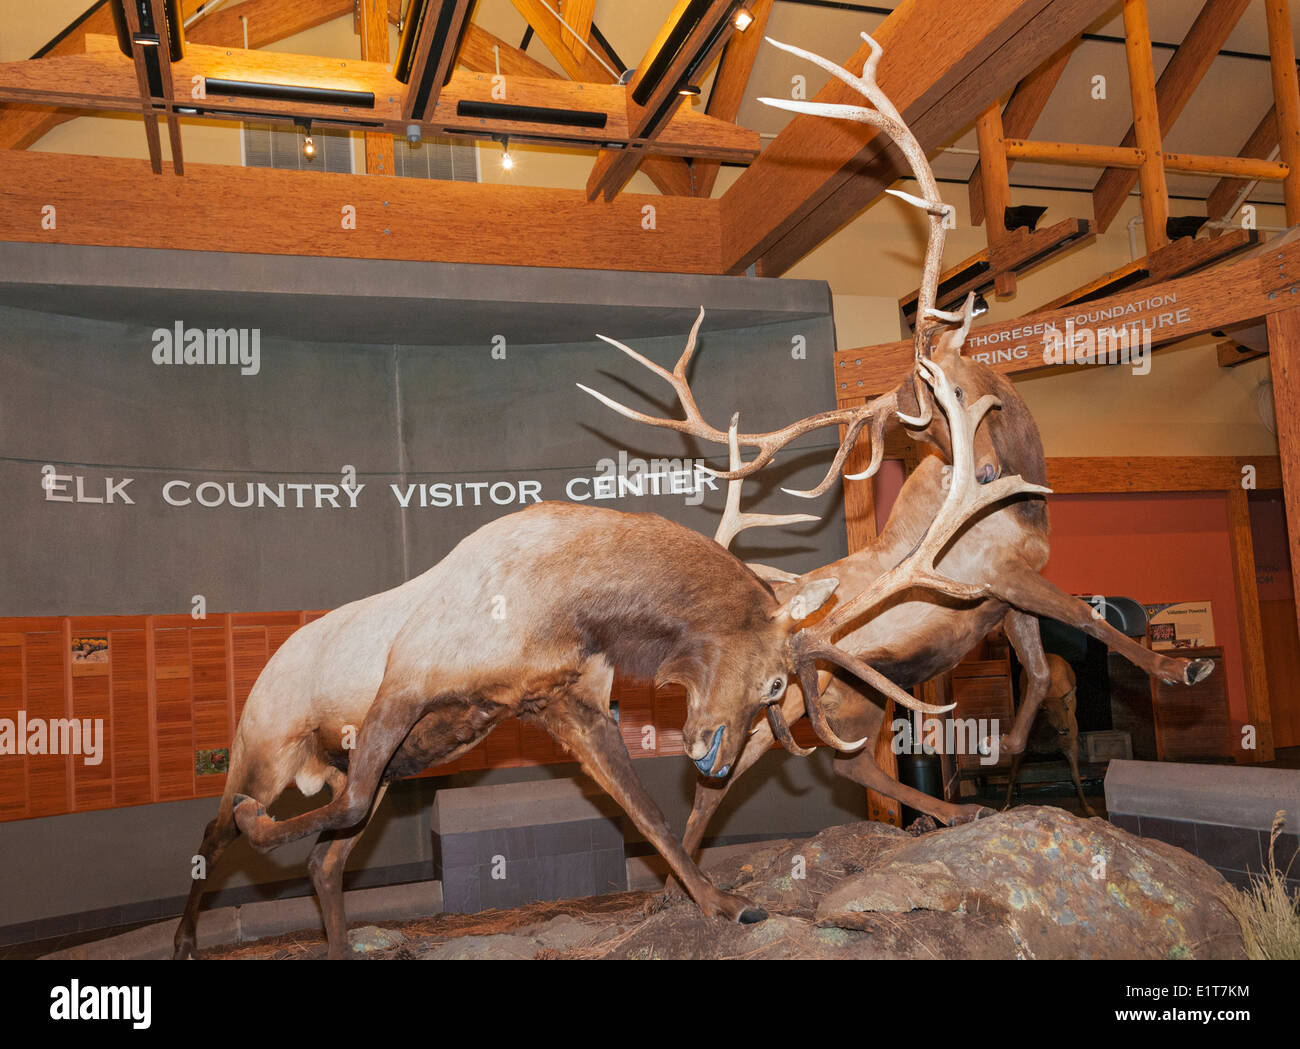 Montana, Missoula, Rocky Mountain Elk Foundation, Elk Paese centro visitatori Foto Stock